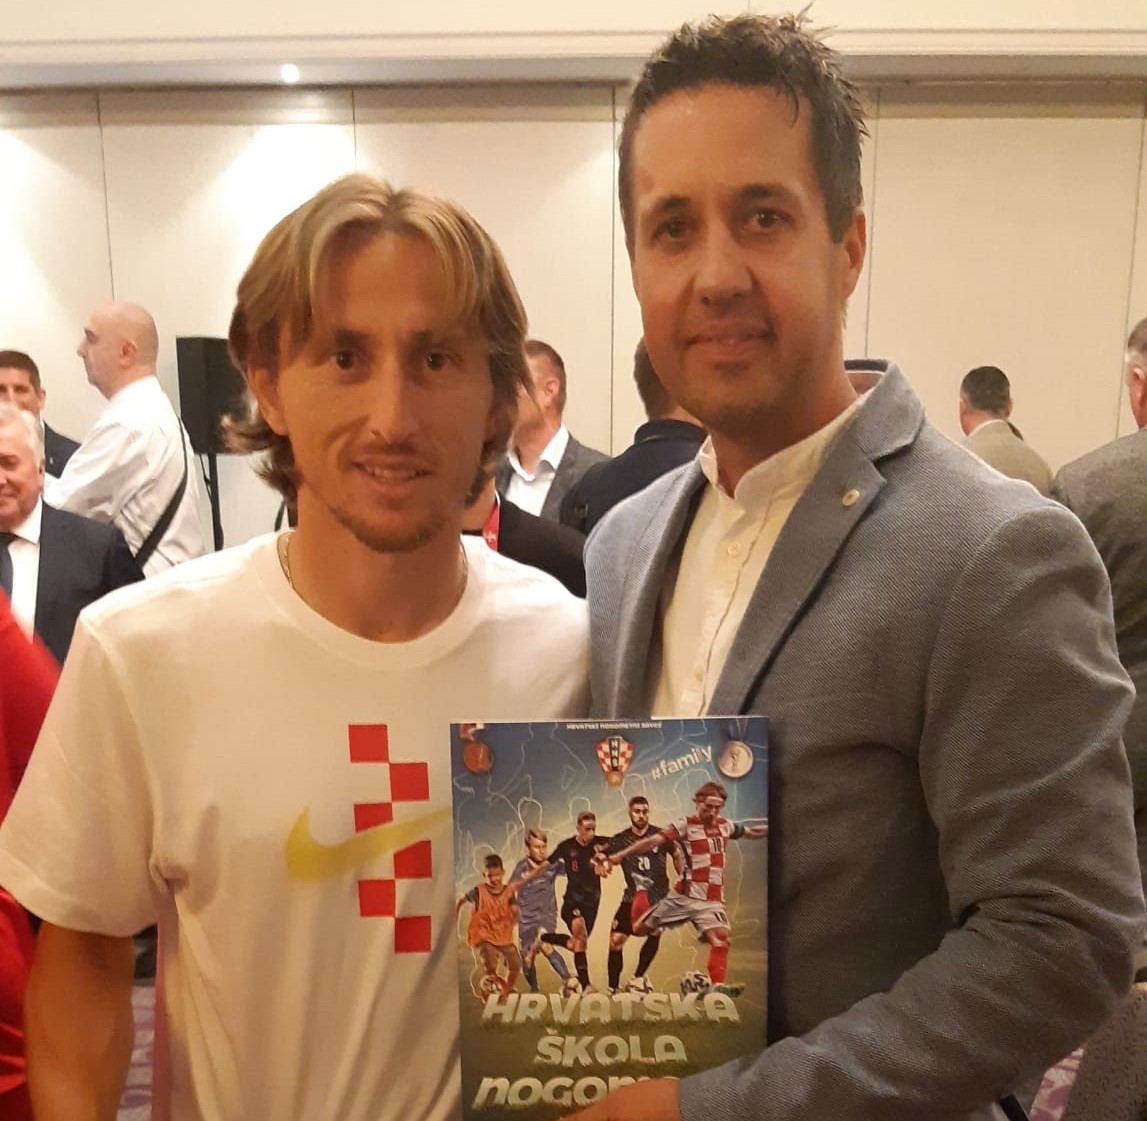 Predstavljena knjiga “Hrvatska škola nogometa”